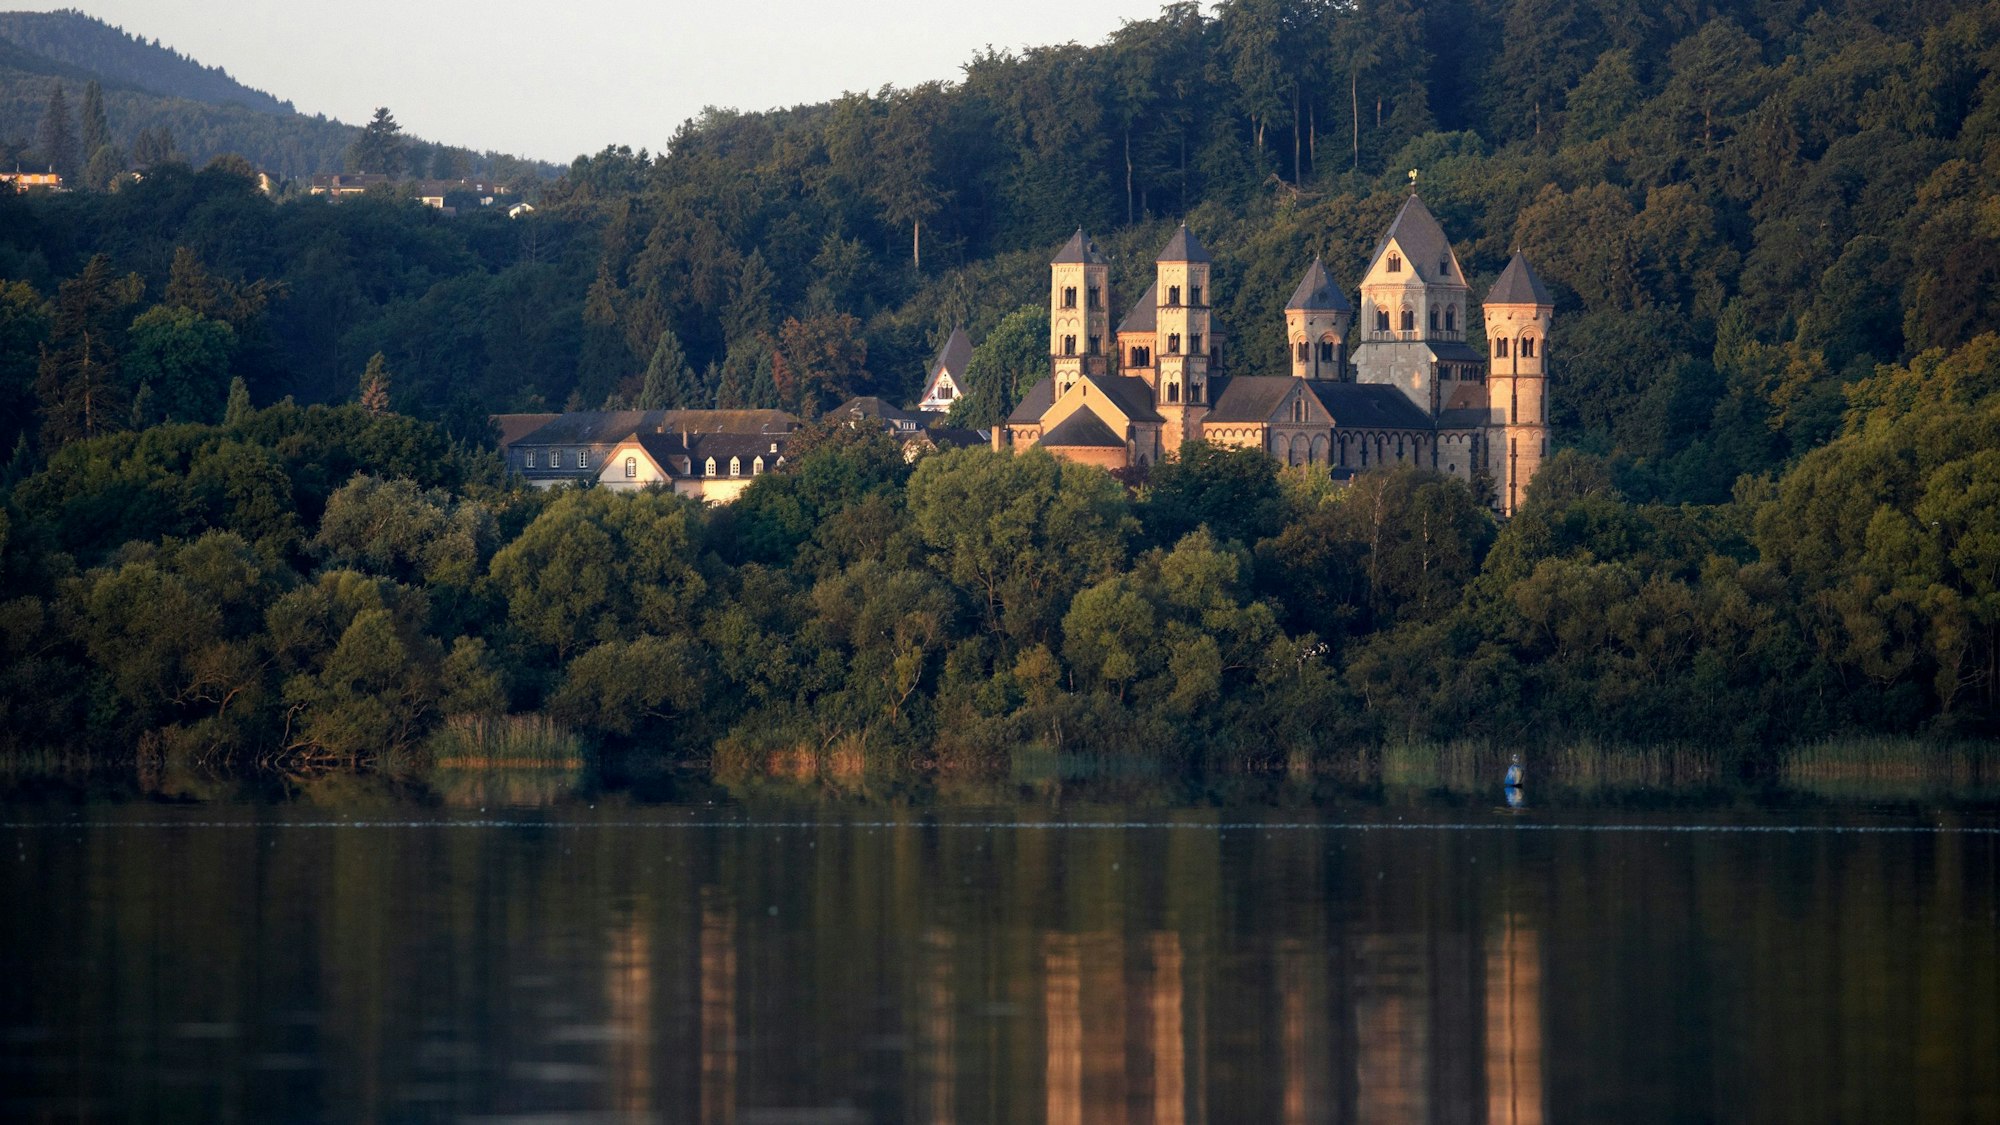 Das 920 Jahre alte Kloster Maria Laach liegt direkt am Laacher See, in den der Traghubschrauber gestürzt ist. (Archivbild)